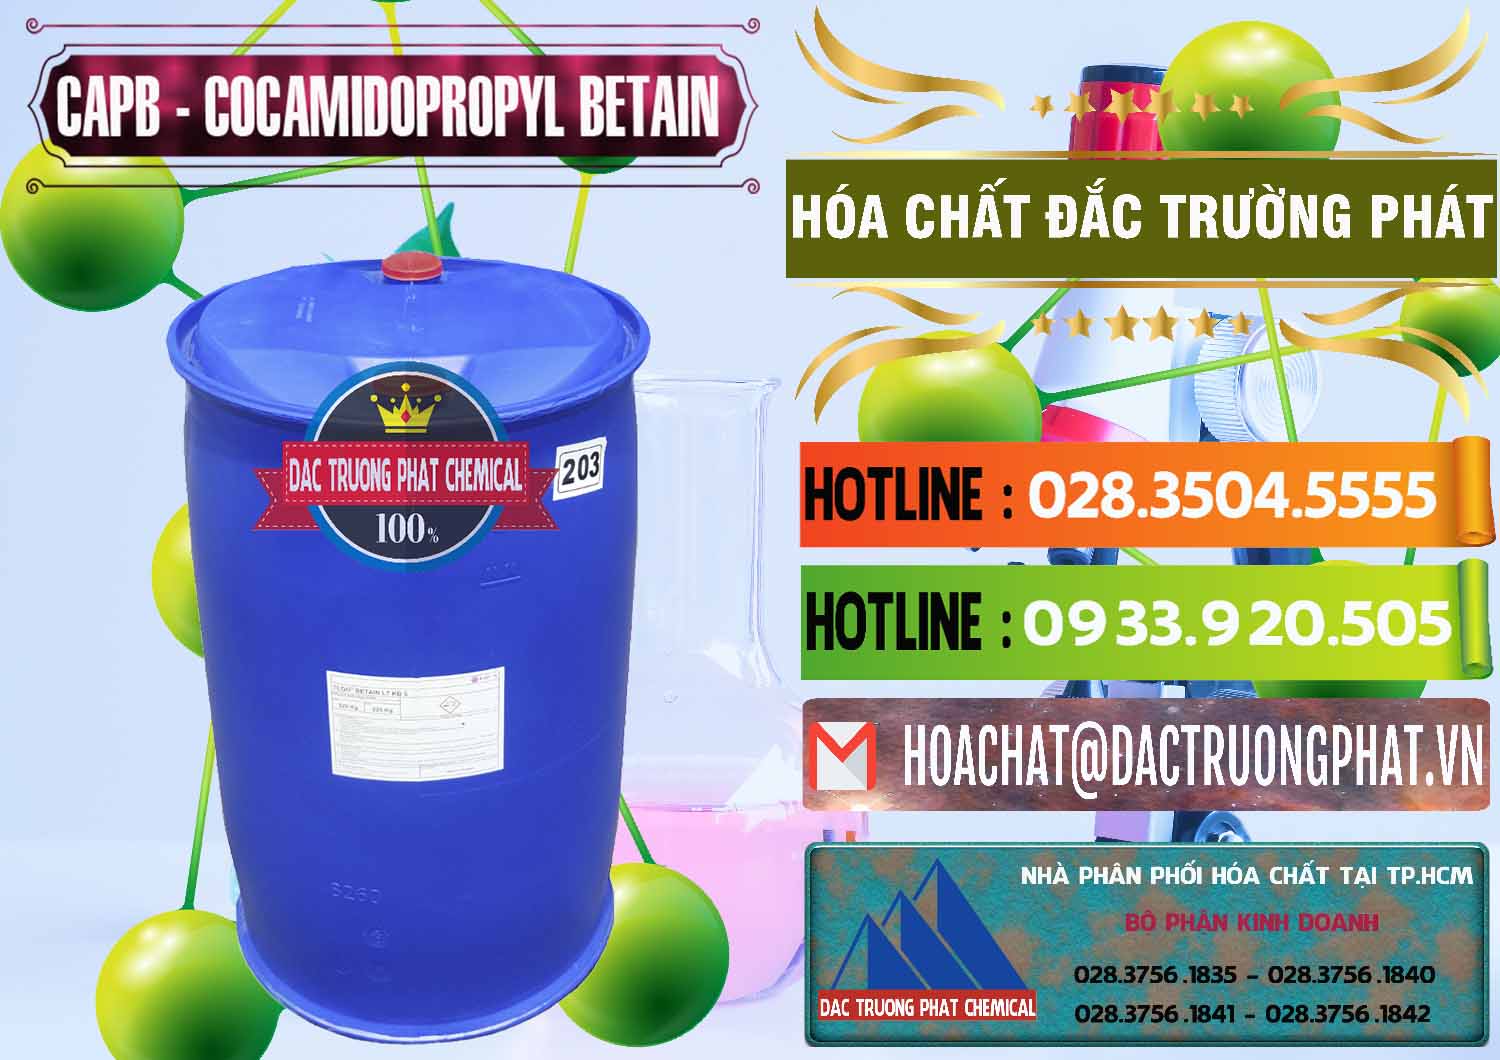 Công ty bán - phân phối Cocamidopropyl Betaine - CAPB Tego Indonesia - 0327 - Công ty chuyên cung ứng & phân phối hóa chất tại TP.HCM - cungcaphoachat.com.vn